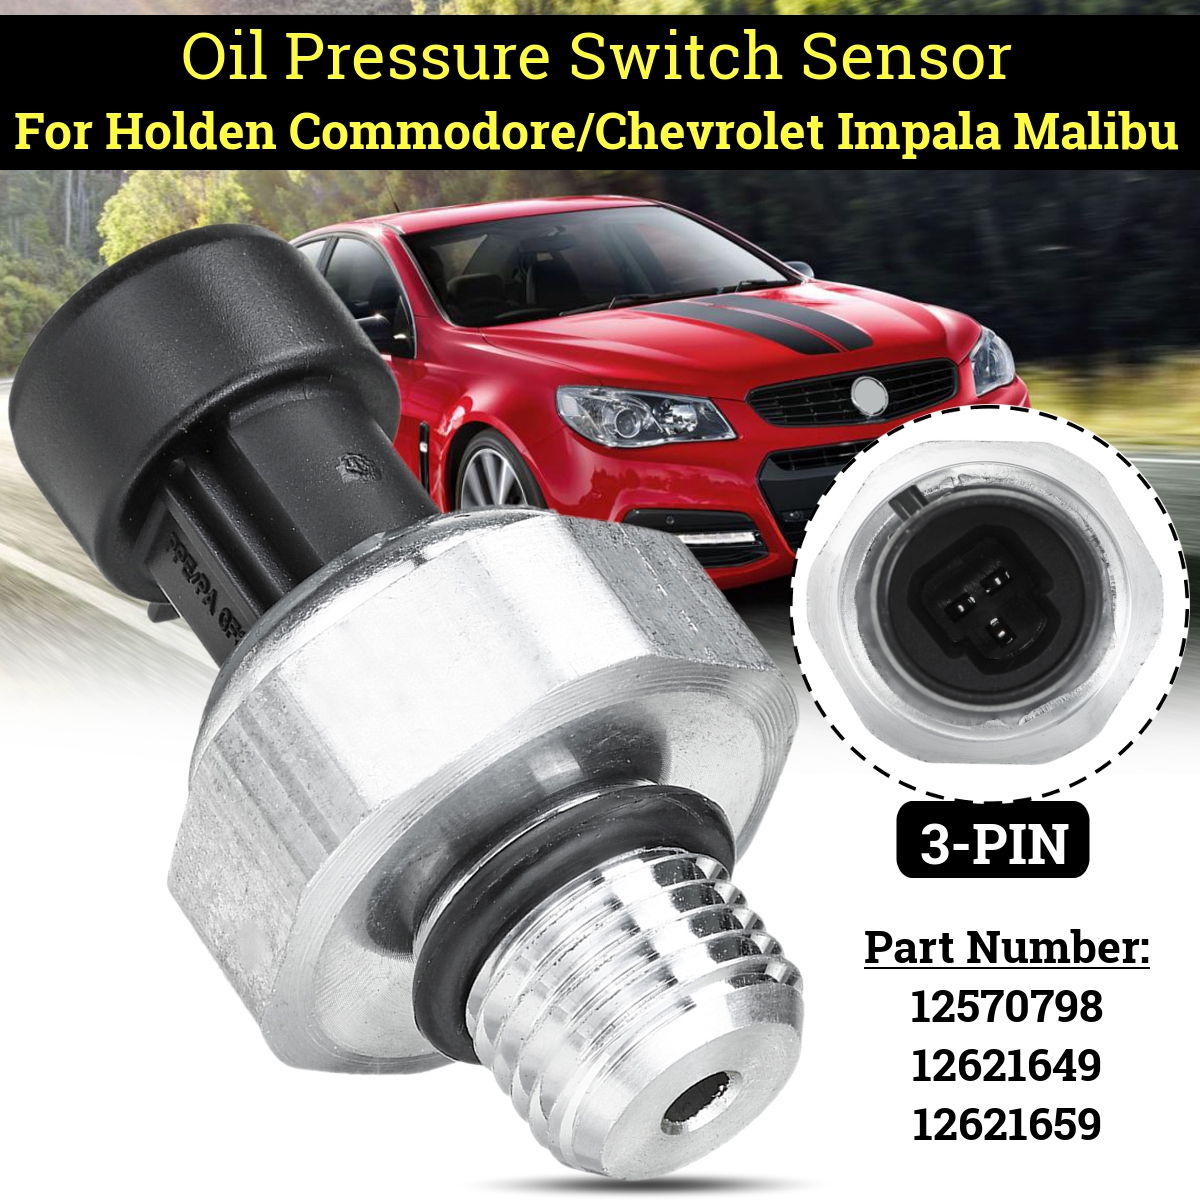 Oil Pressure Switch Sensor For Holden Commodore/Chevrolet Impala Malibu